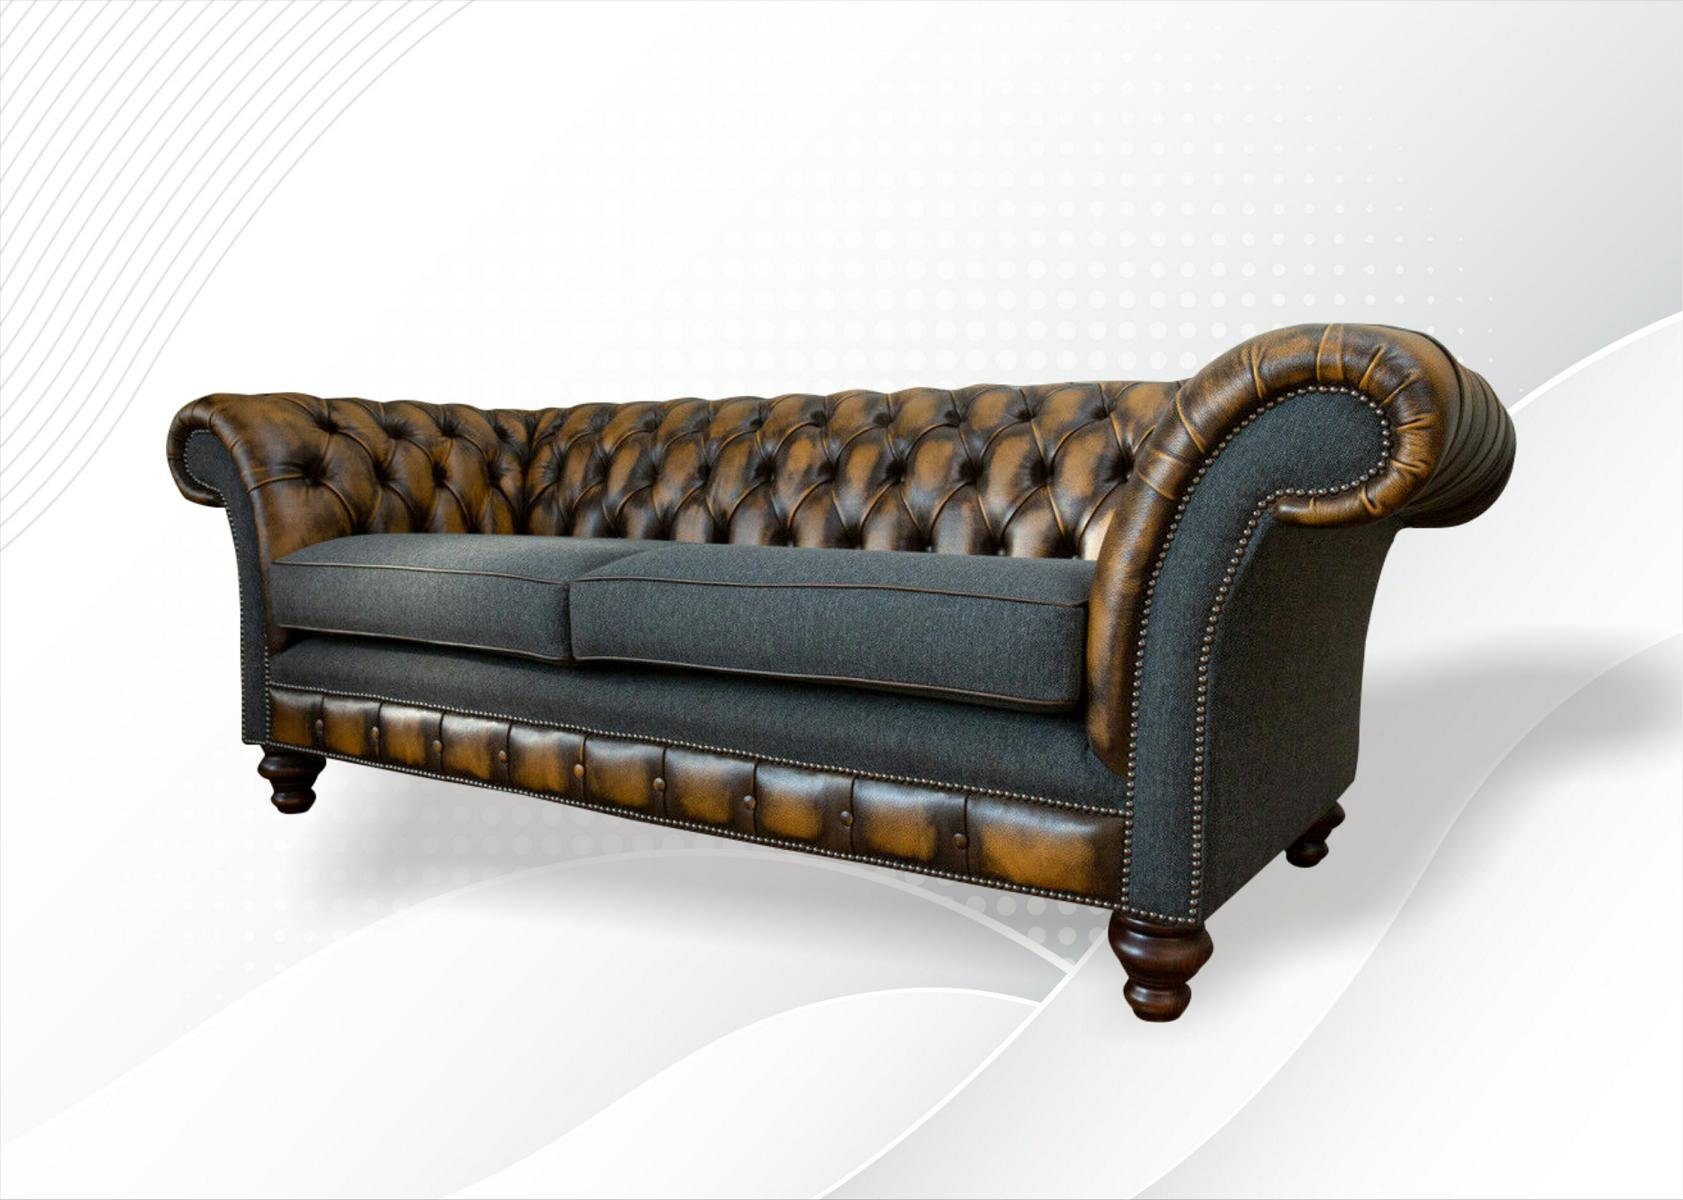 Modern in Made Brauner Chesterfield-Sofa JVmoebel Neu, Dreisitzer Chesterfield Möbel Europe Luxus